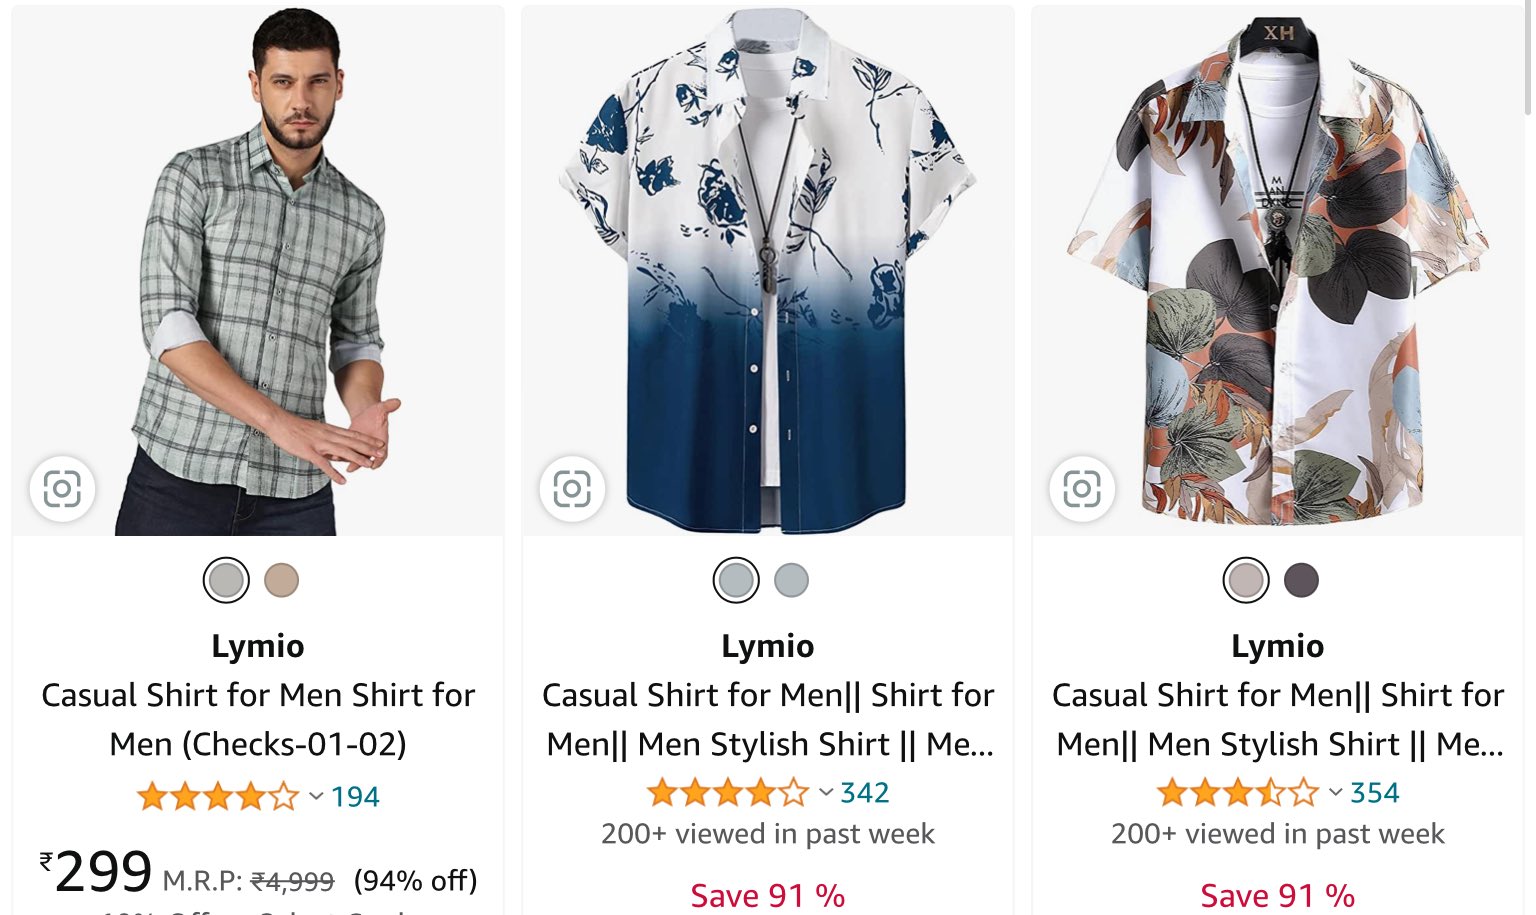 Buy Lymio Casual Shirt for Men, Shirt for Men, Men Stylish Shirt